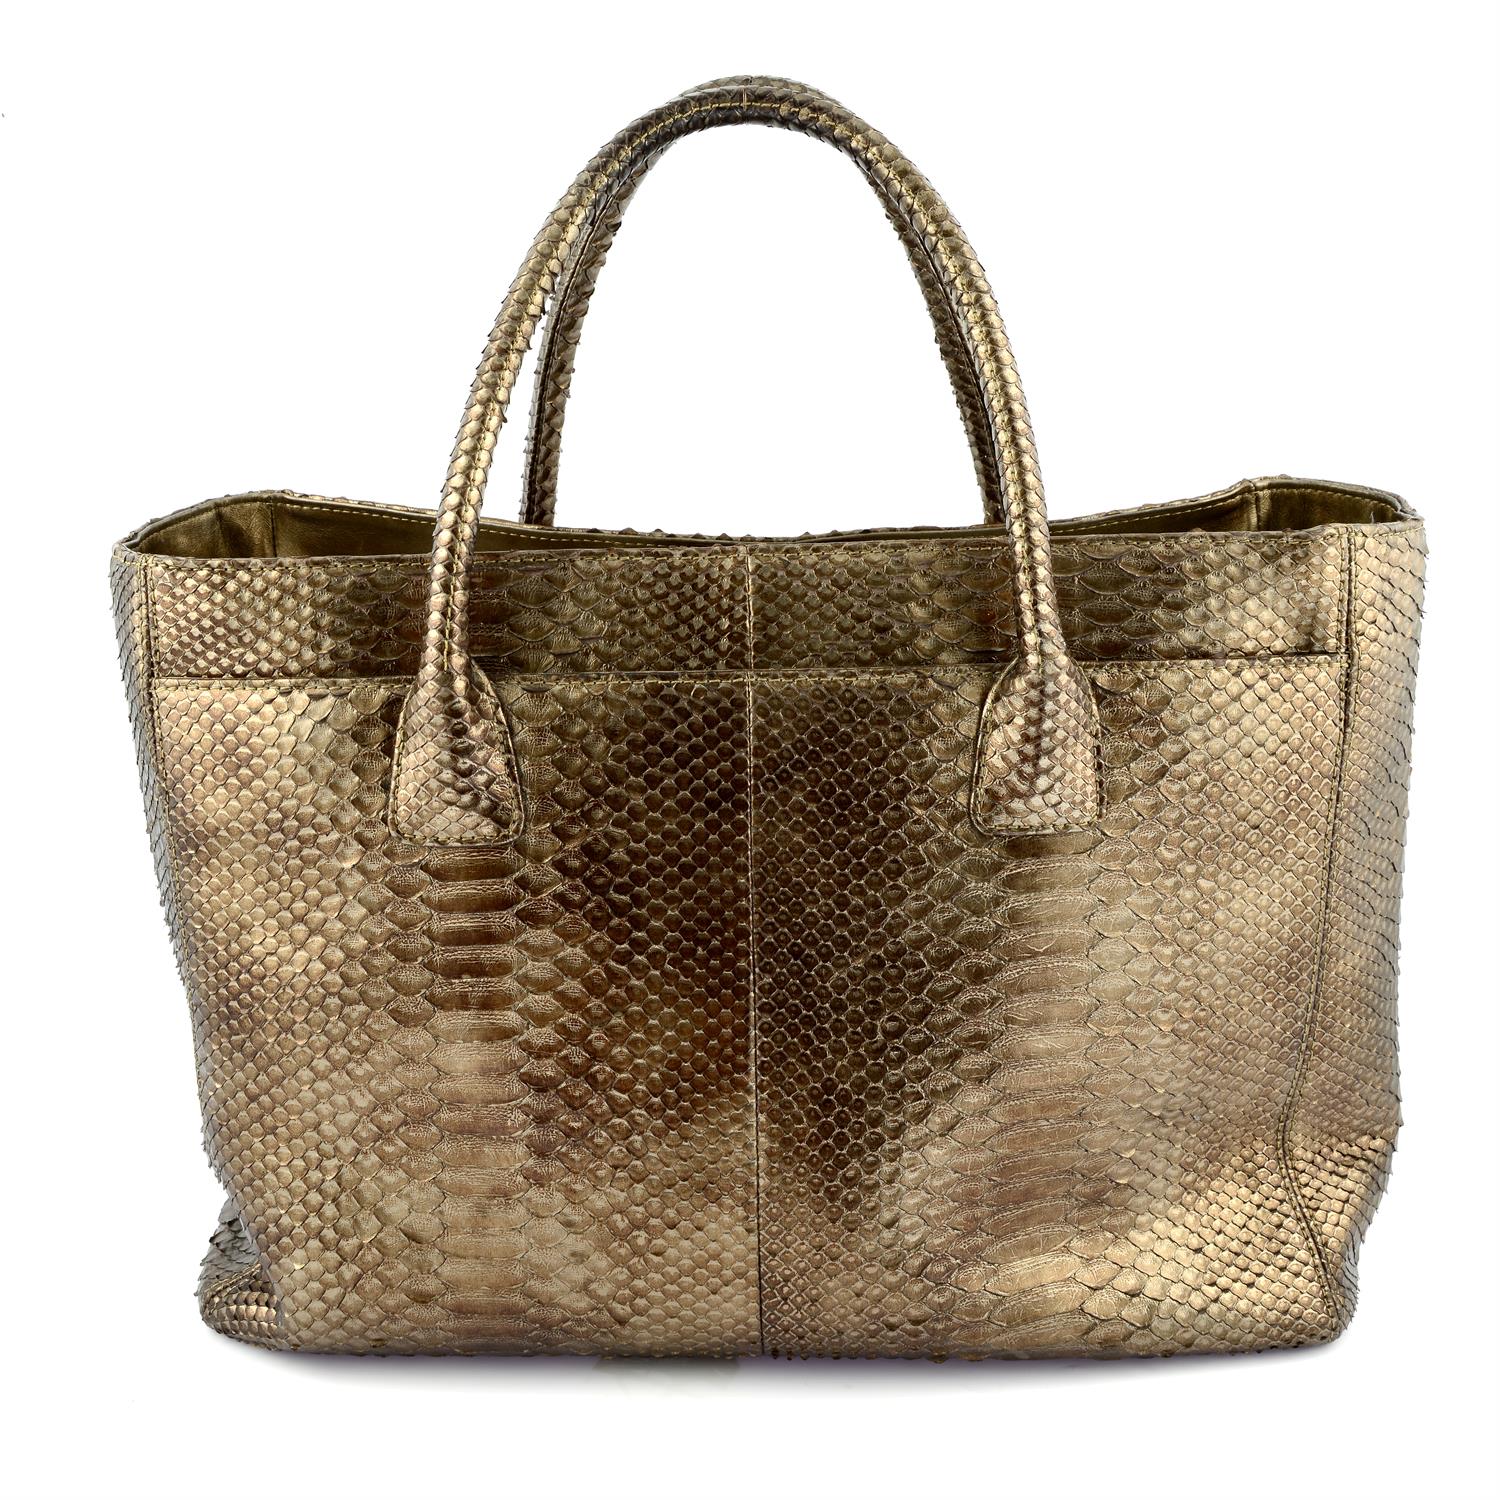 CHANEL - A bronze metallic Python handbag - Image 3 of 5